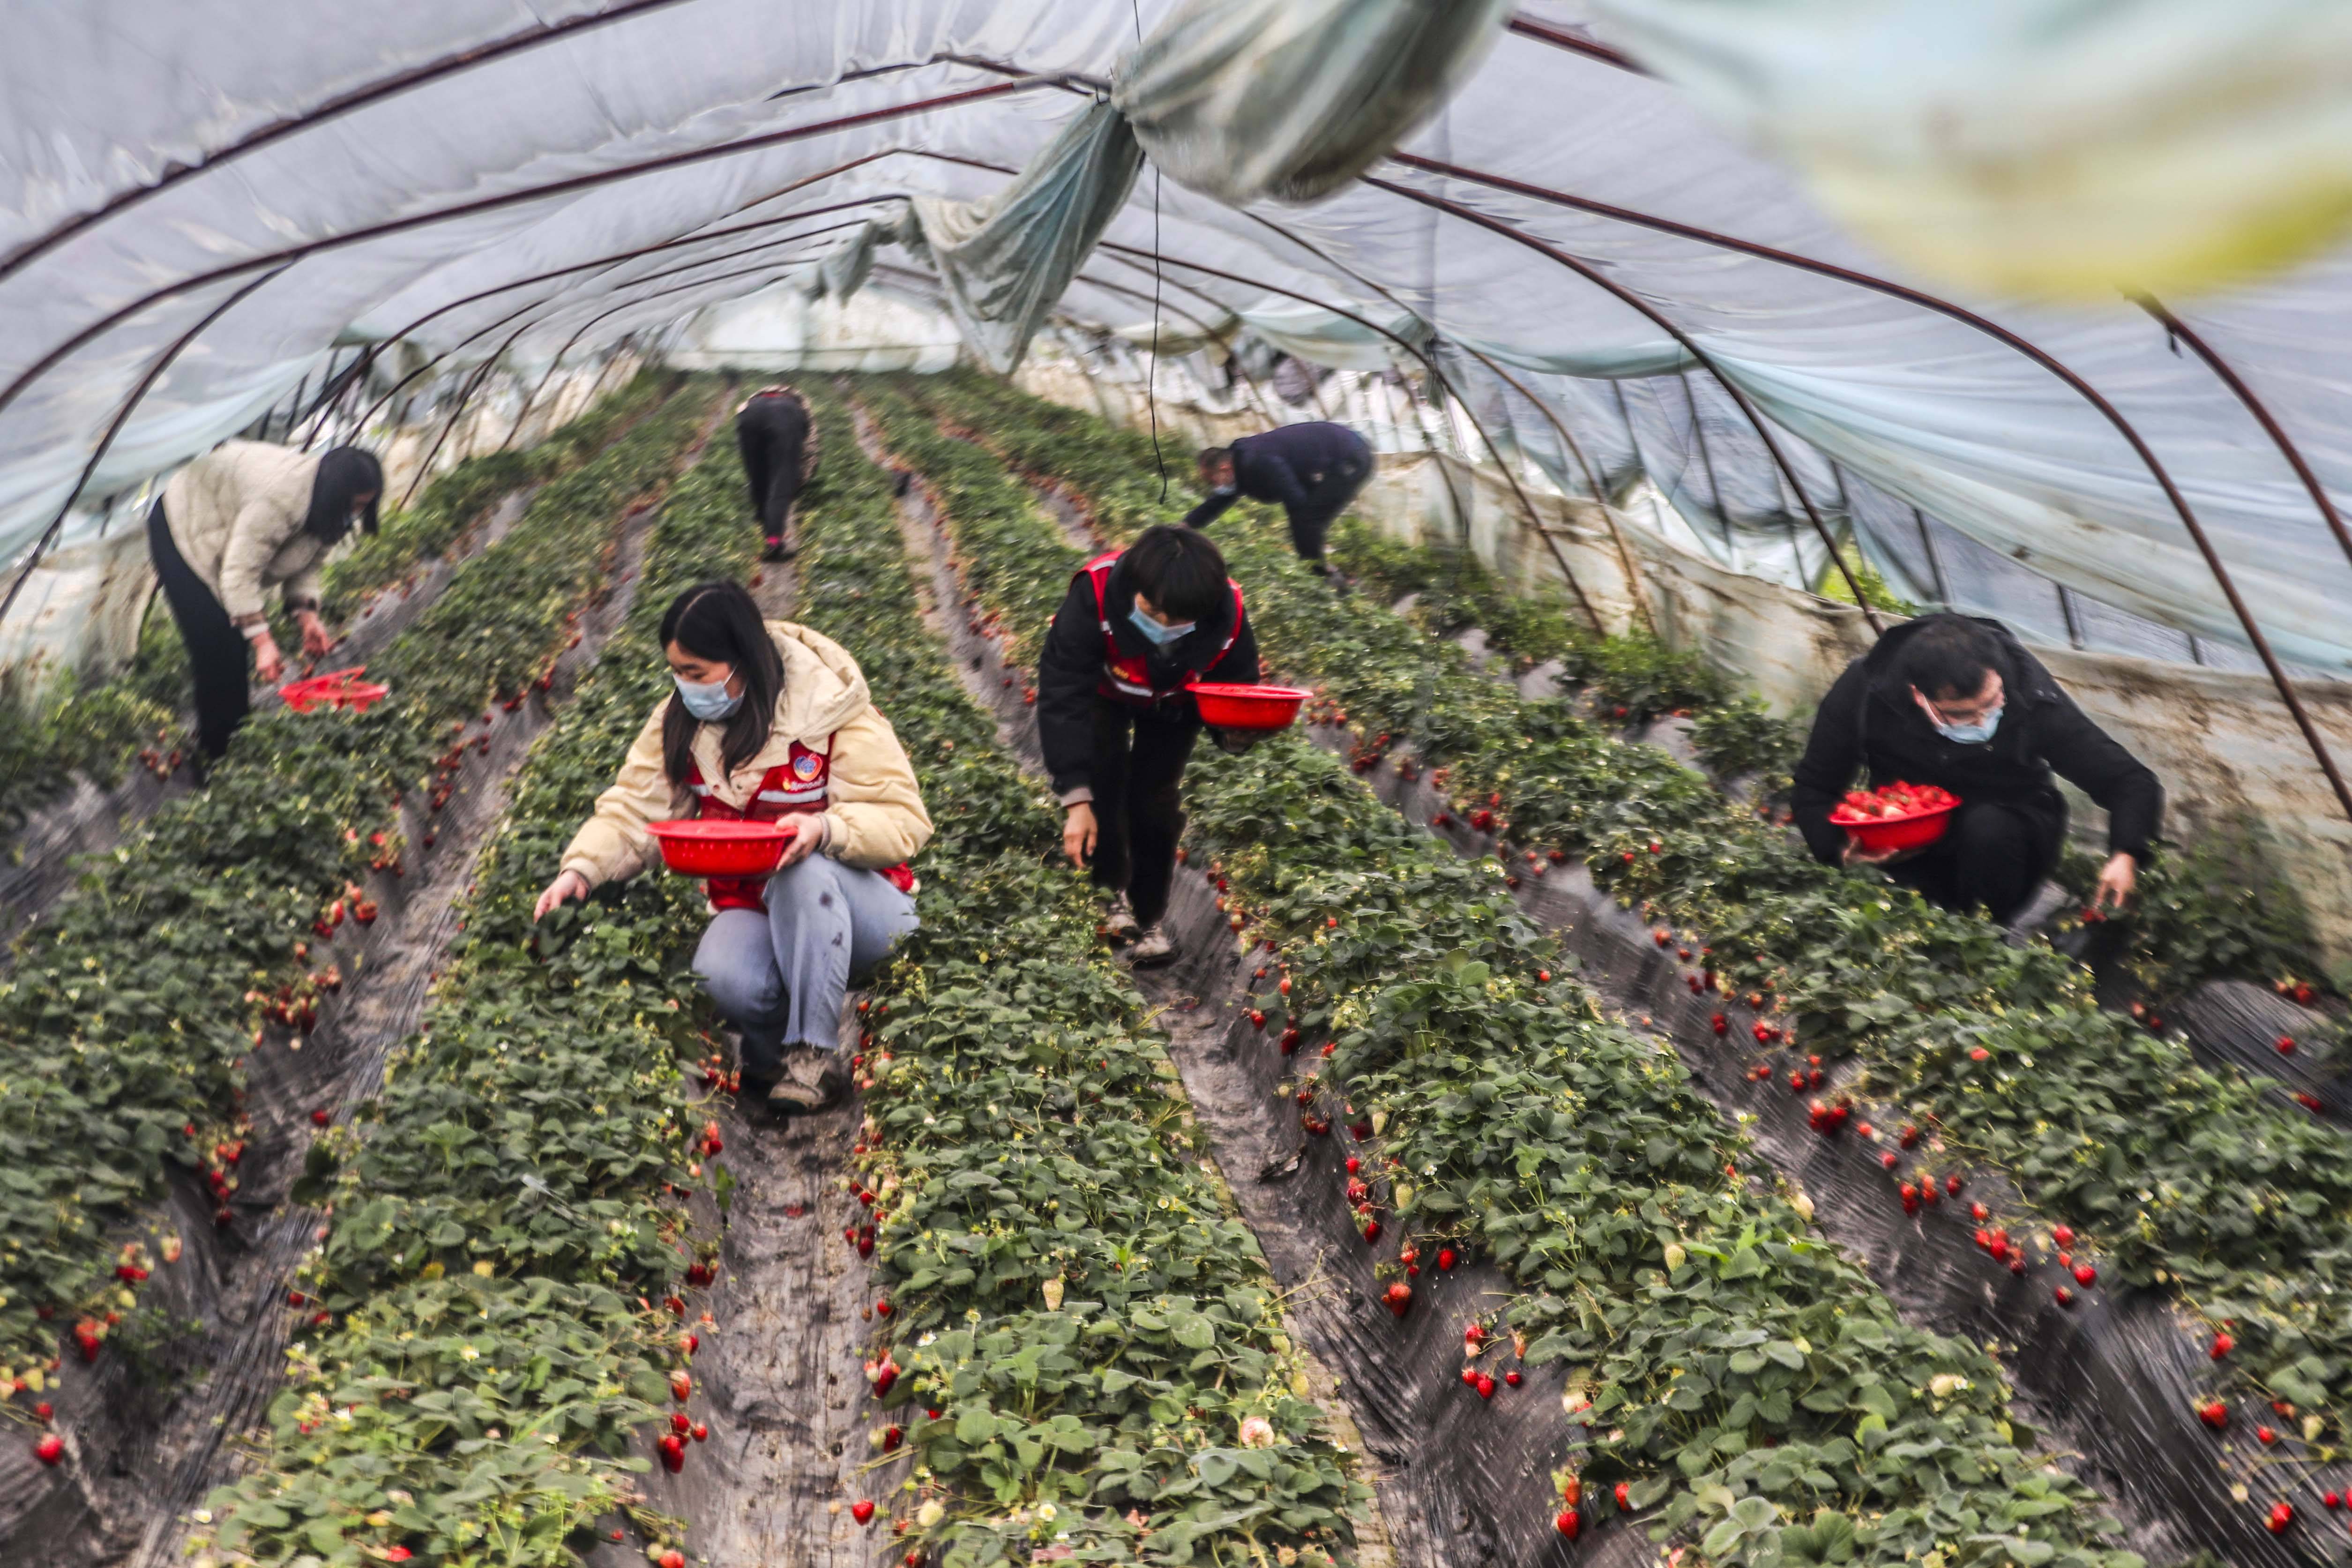 泰州市海陵区罡杨镇杨庄社区网格员利用双休时间,到社区草莓种植大棚